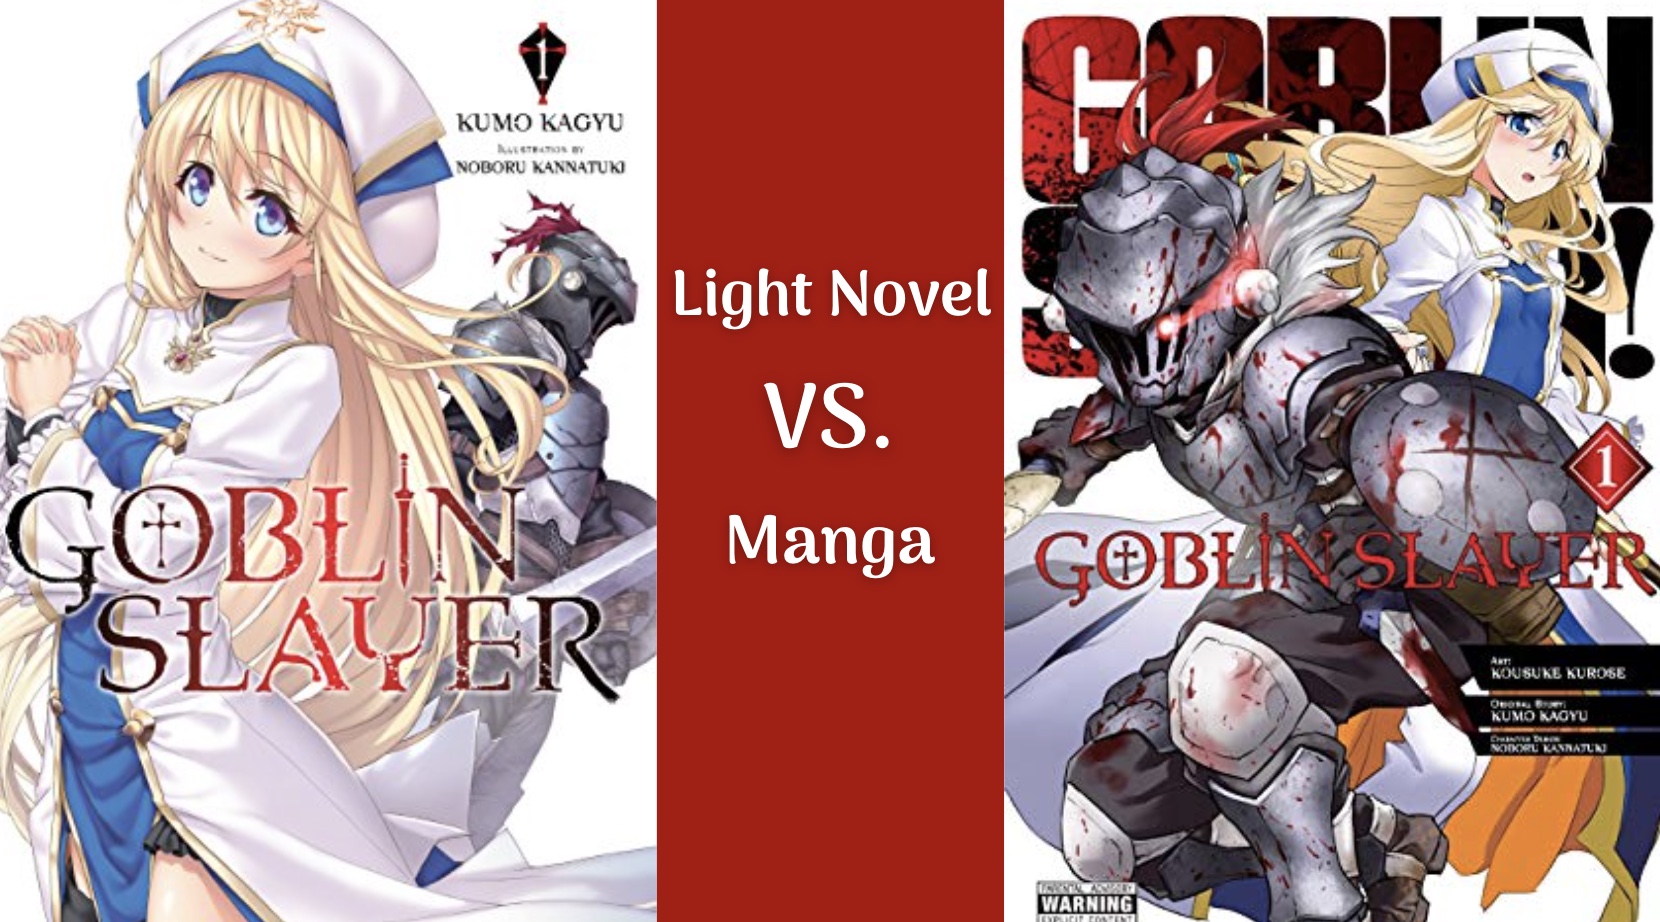 Goblin Slayer Light Novel or Manga